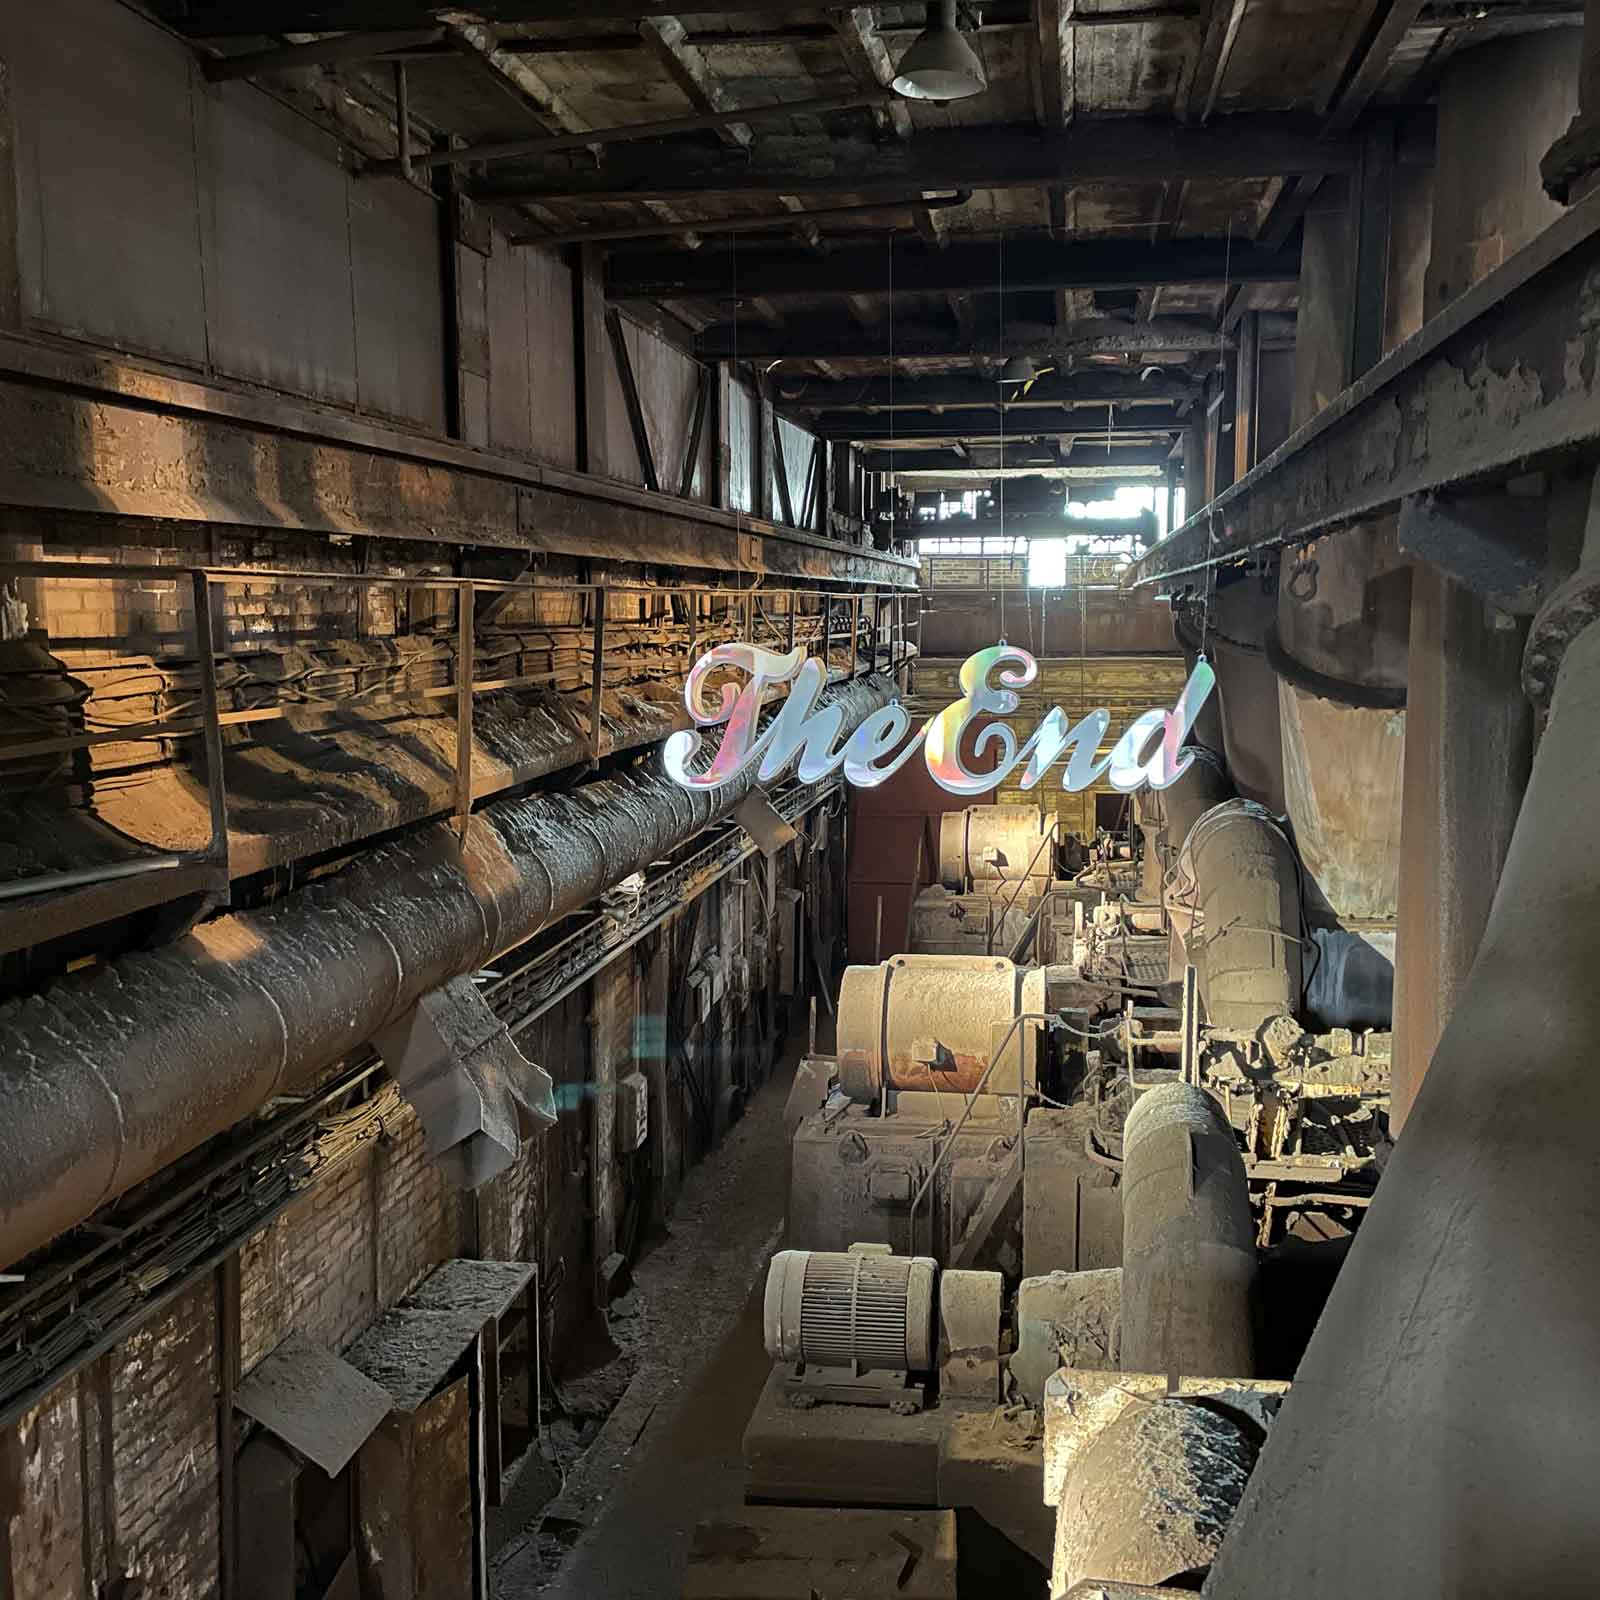 Verstaubte Industriehalle mit "The-End"-Schriftzug